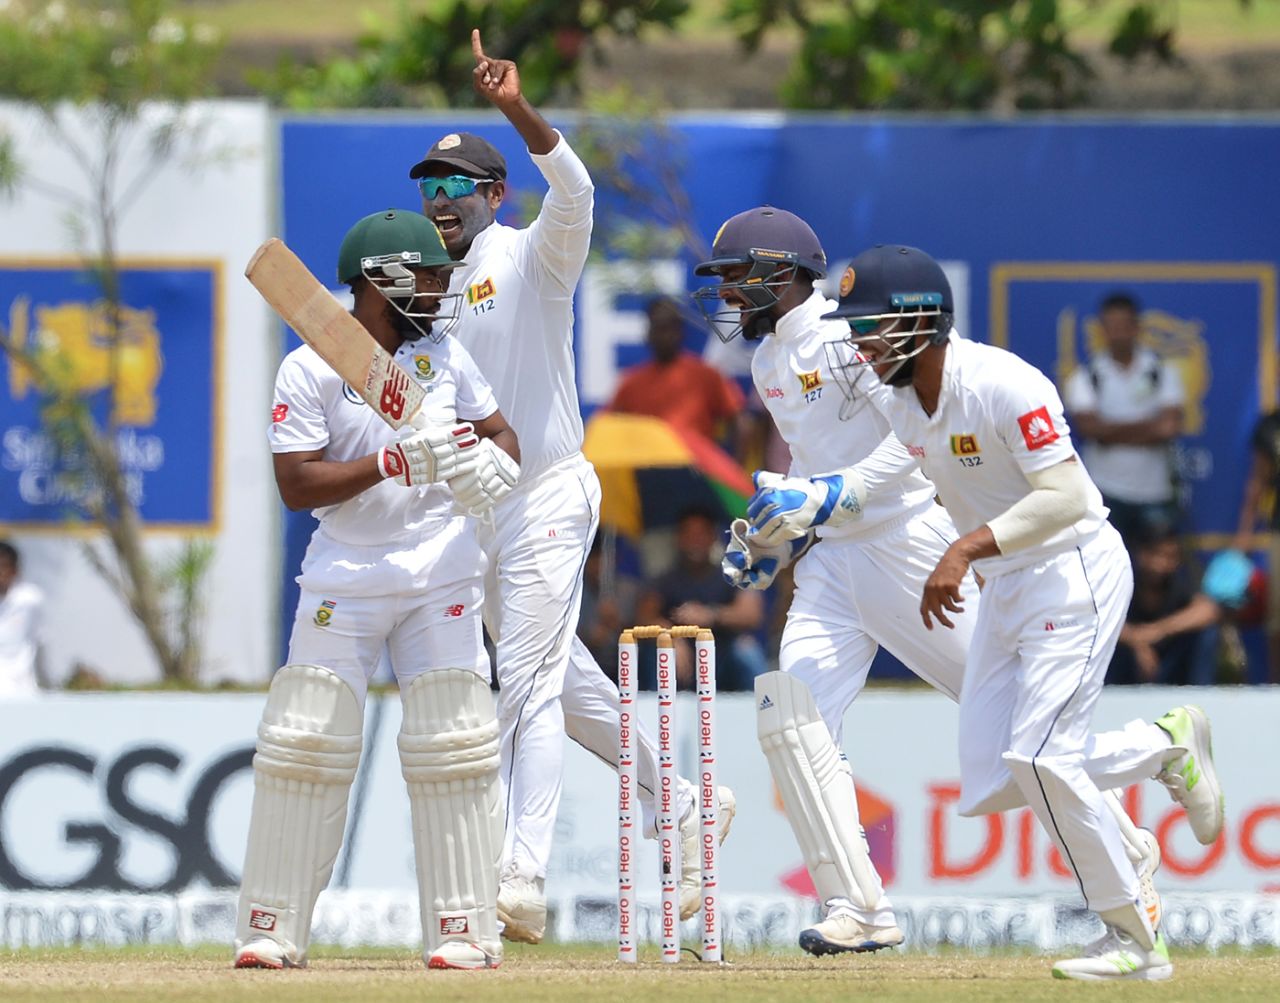 Temba Bavuma was caught at leg slip, Sri Lanka v South Africa, 1st Test, Galle, 3rd day, July 14, 2018